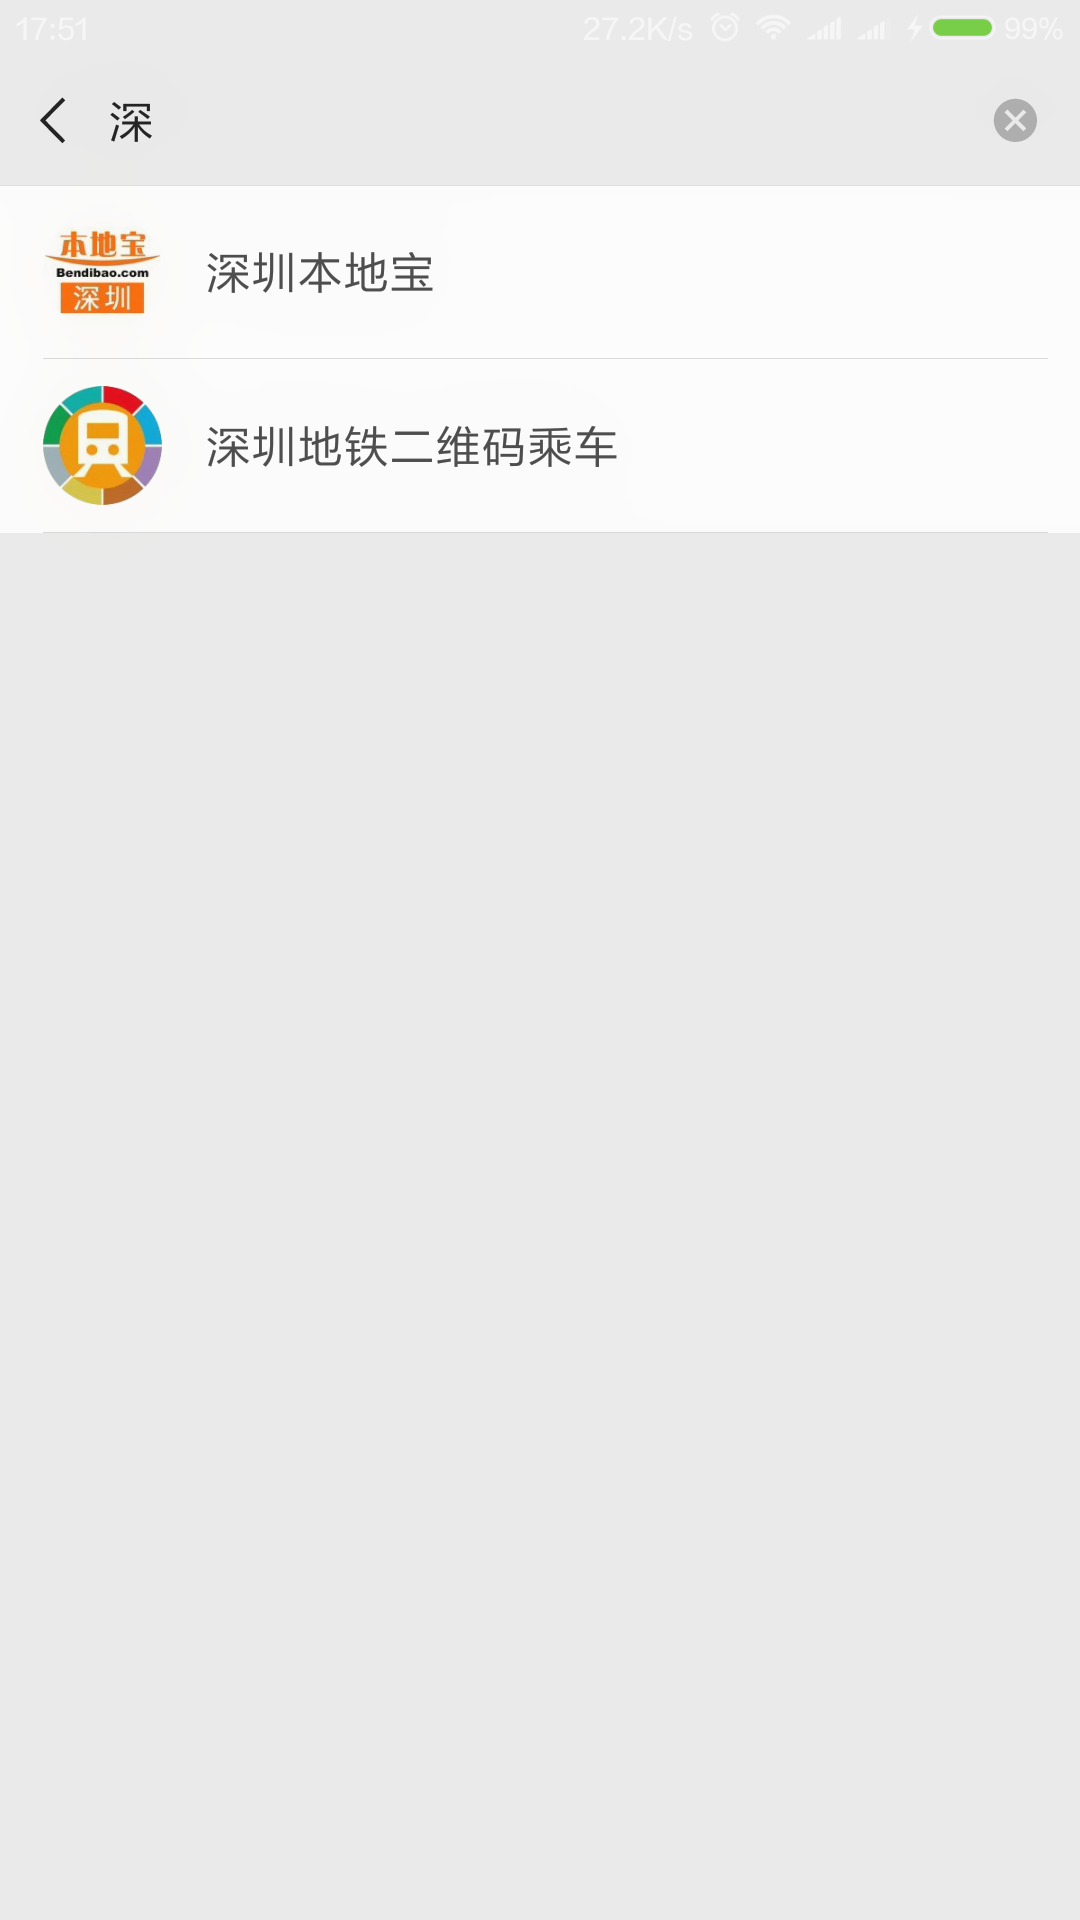 Screenshot_2019-12-04-17-51-59_com.tencent.mm.png